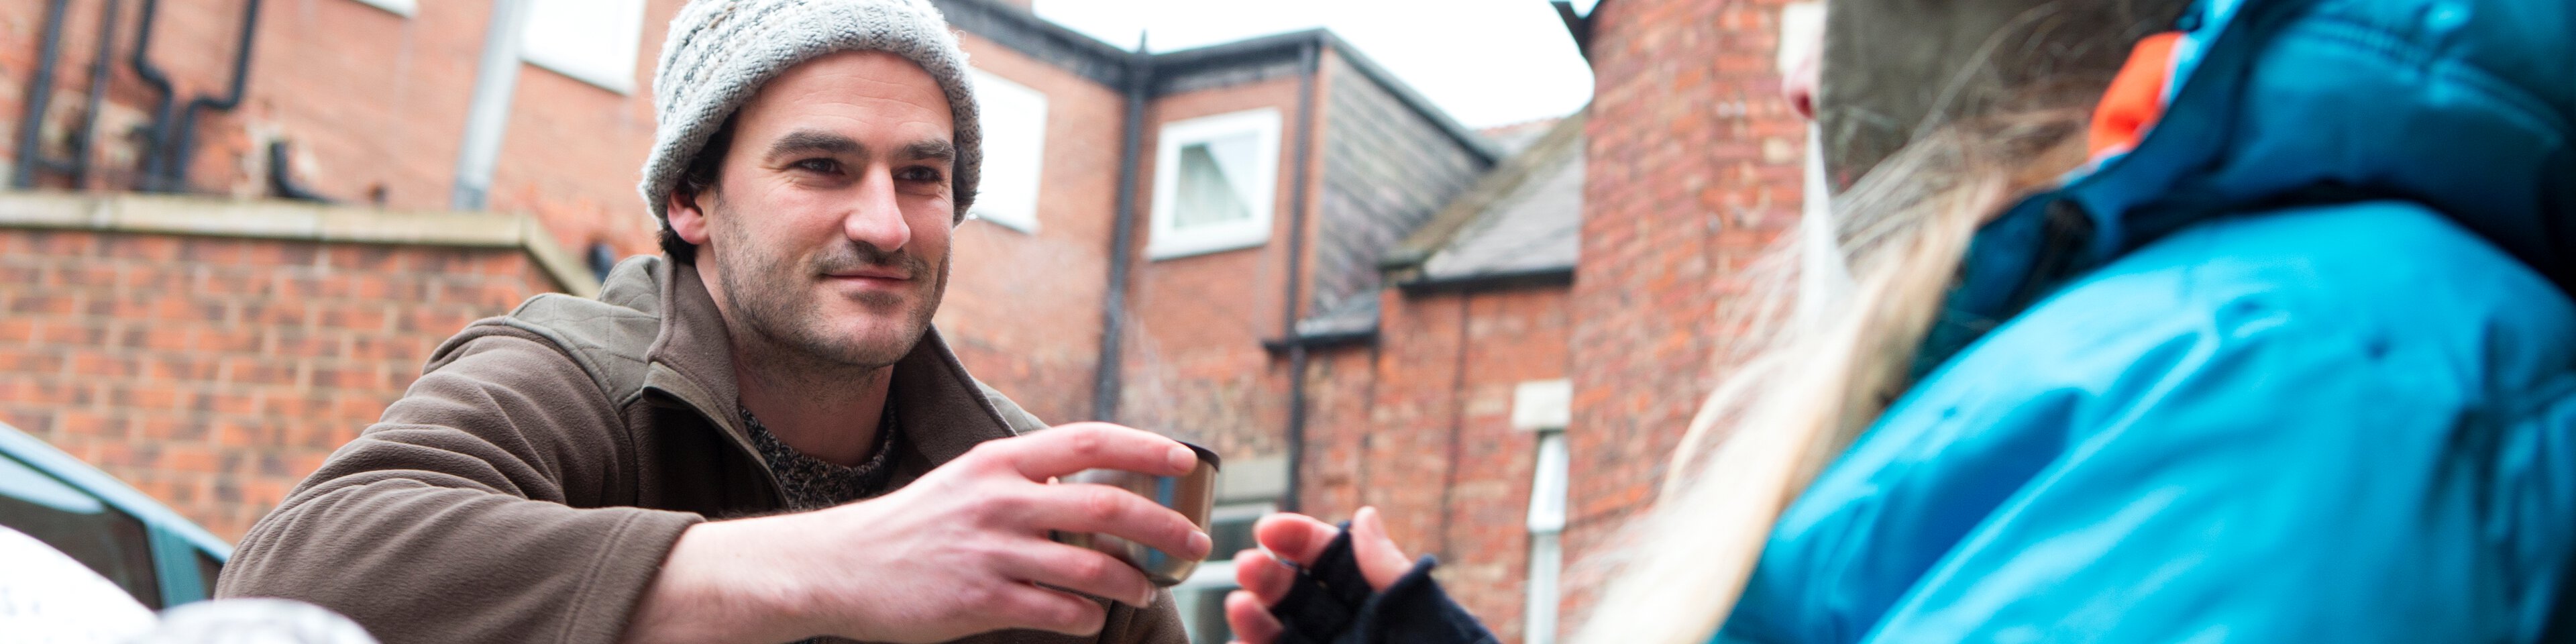 Ein Mann überreicht einen Obdachlosen eine Tasse Tee | © SolStock - Getty Images/iStockphoto